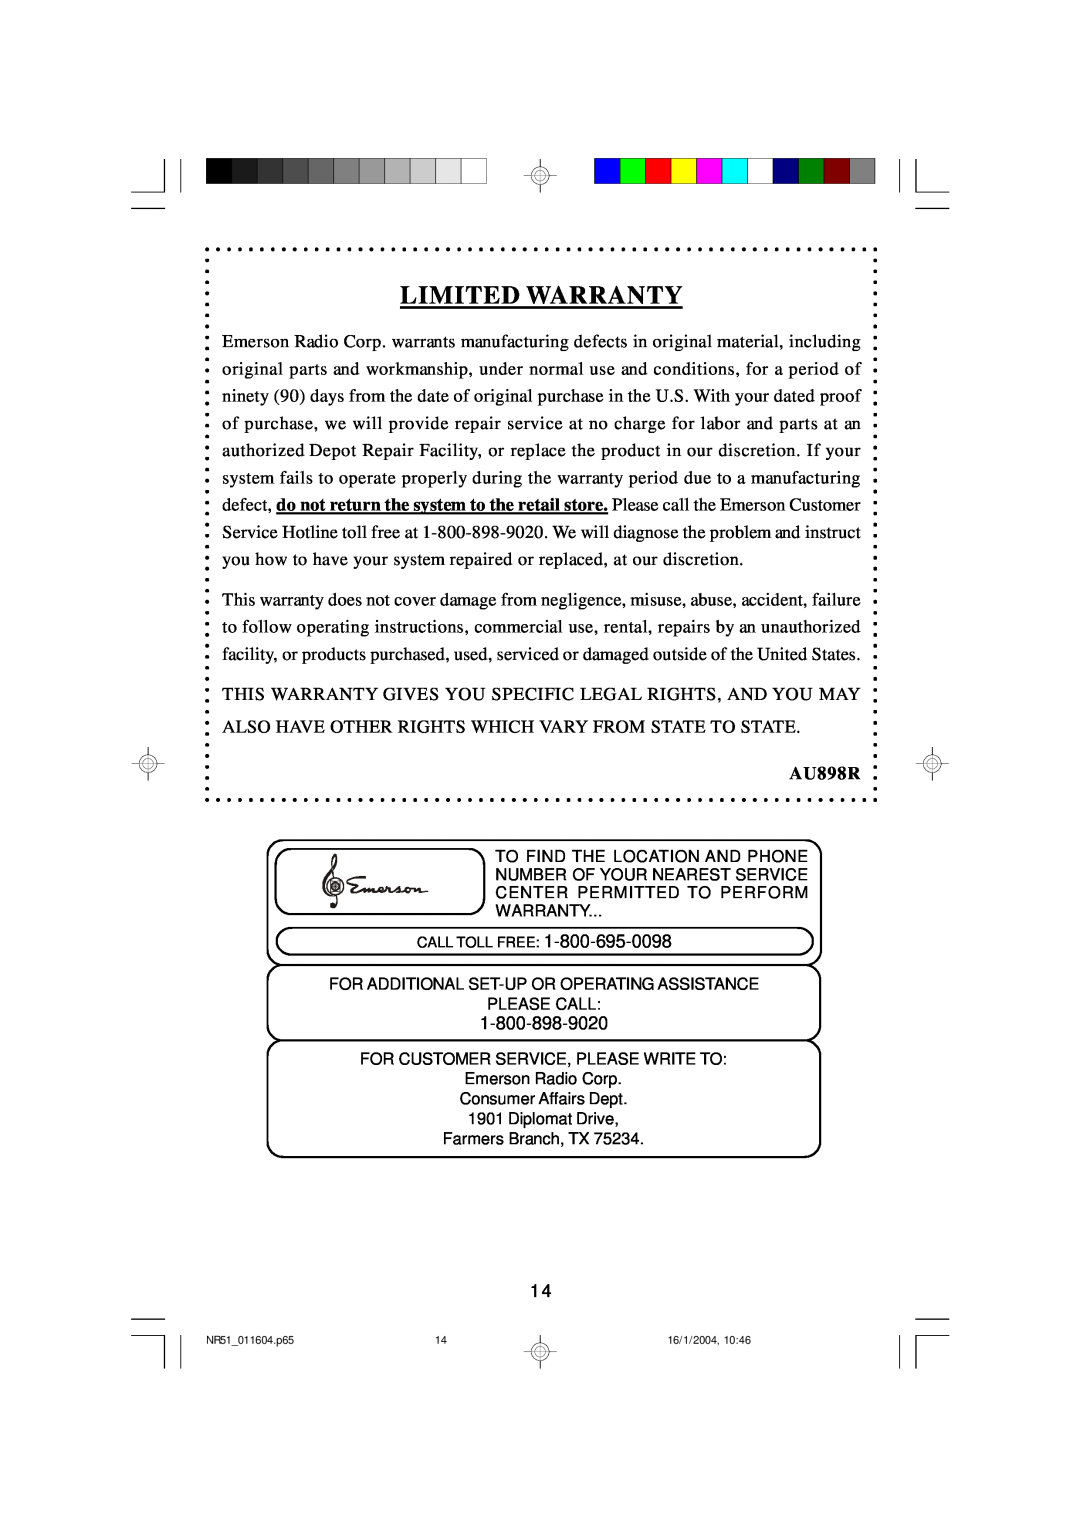 Emerson NR51 owner manual Limited Warranty, AU898R 